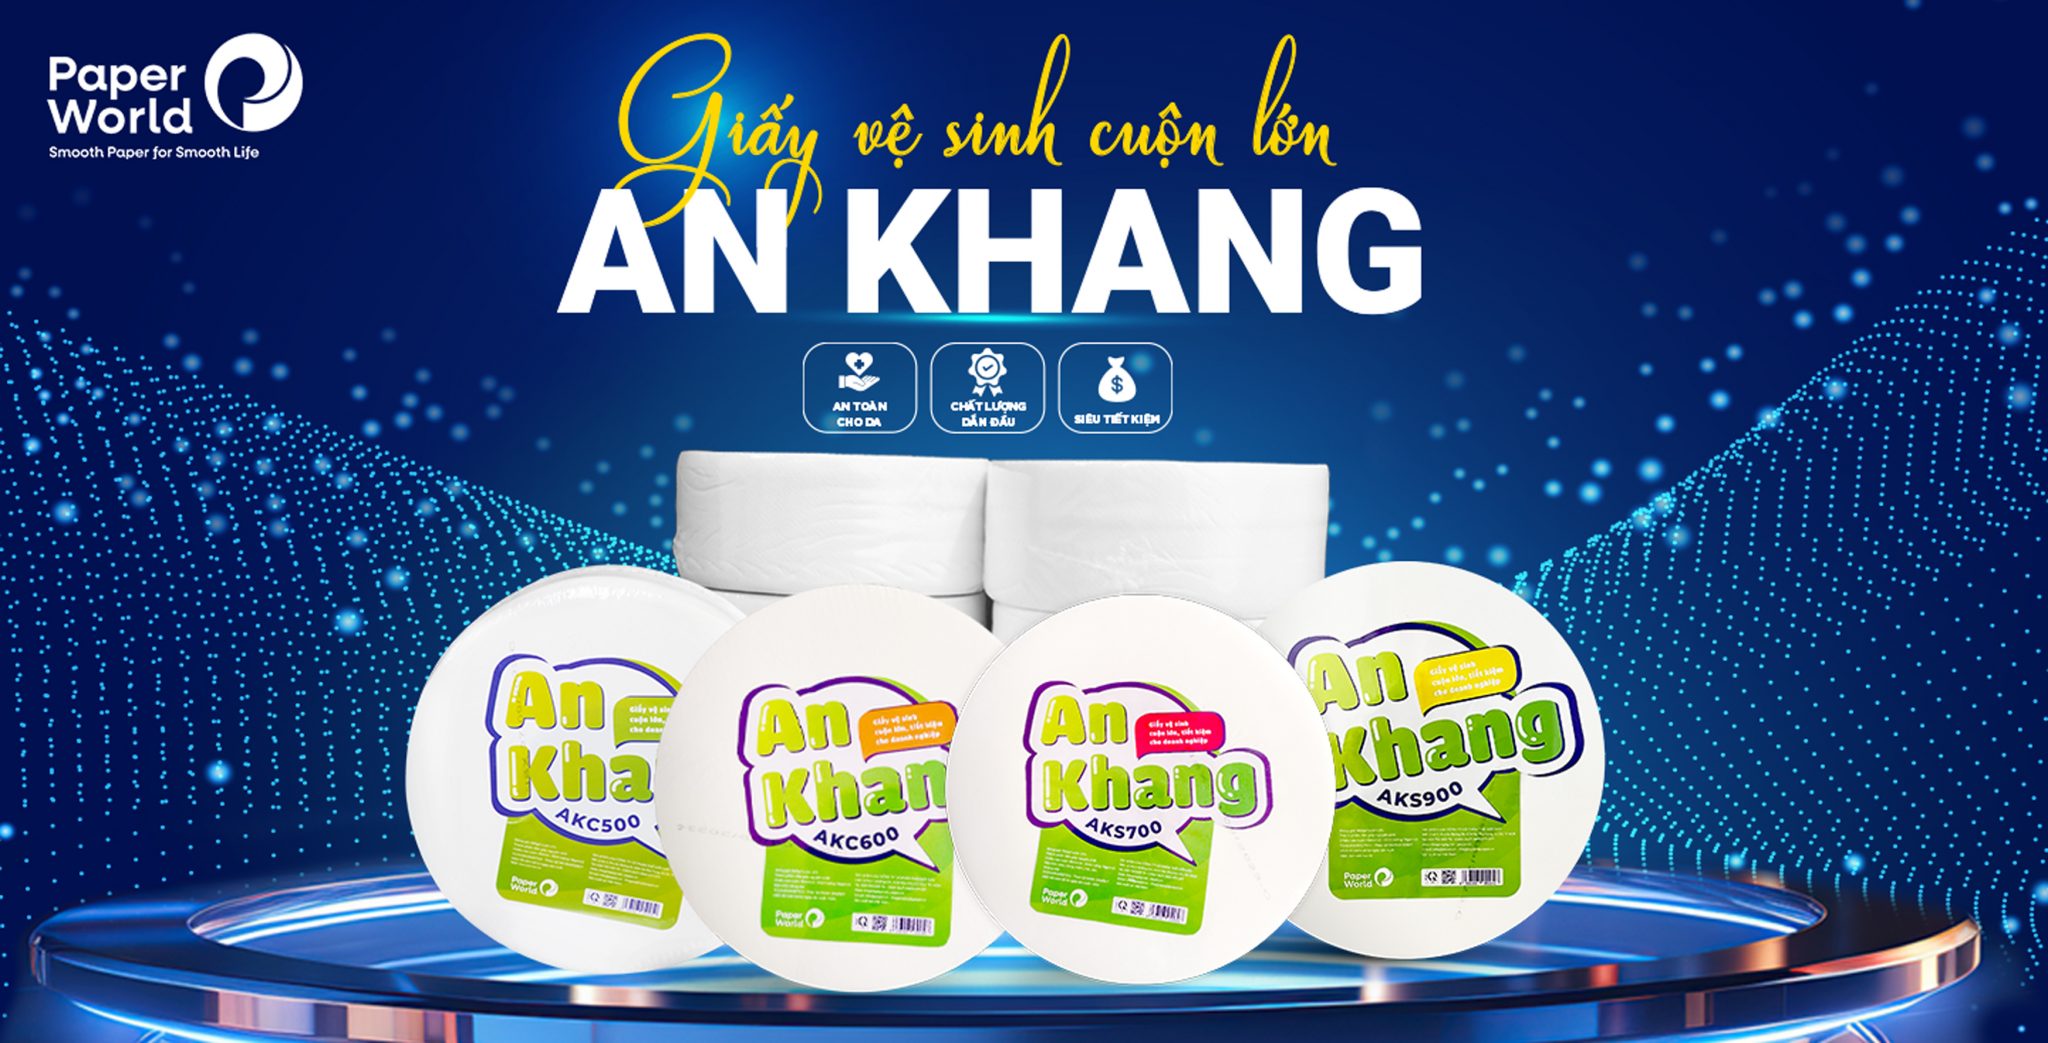 Cung cấp giấy vệ sinh cuộn lớn An Khang